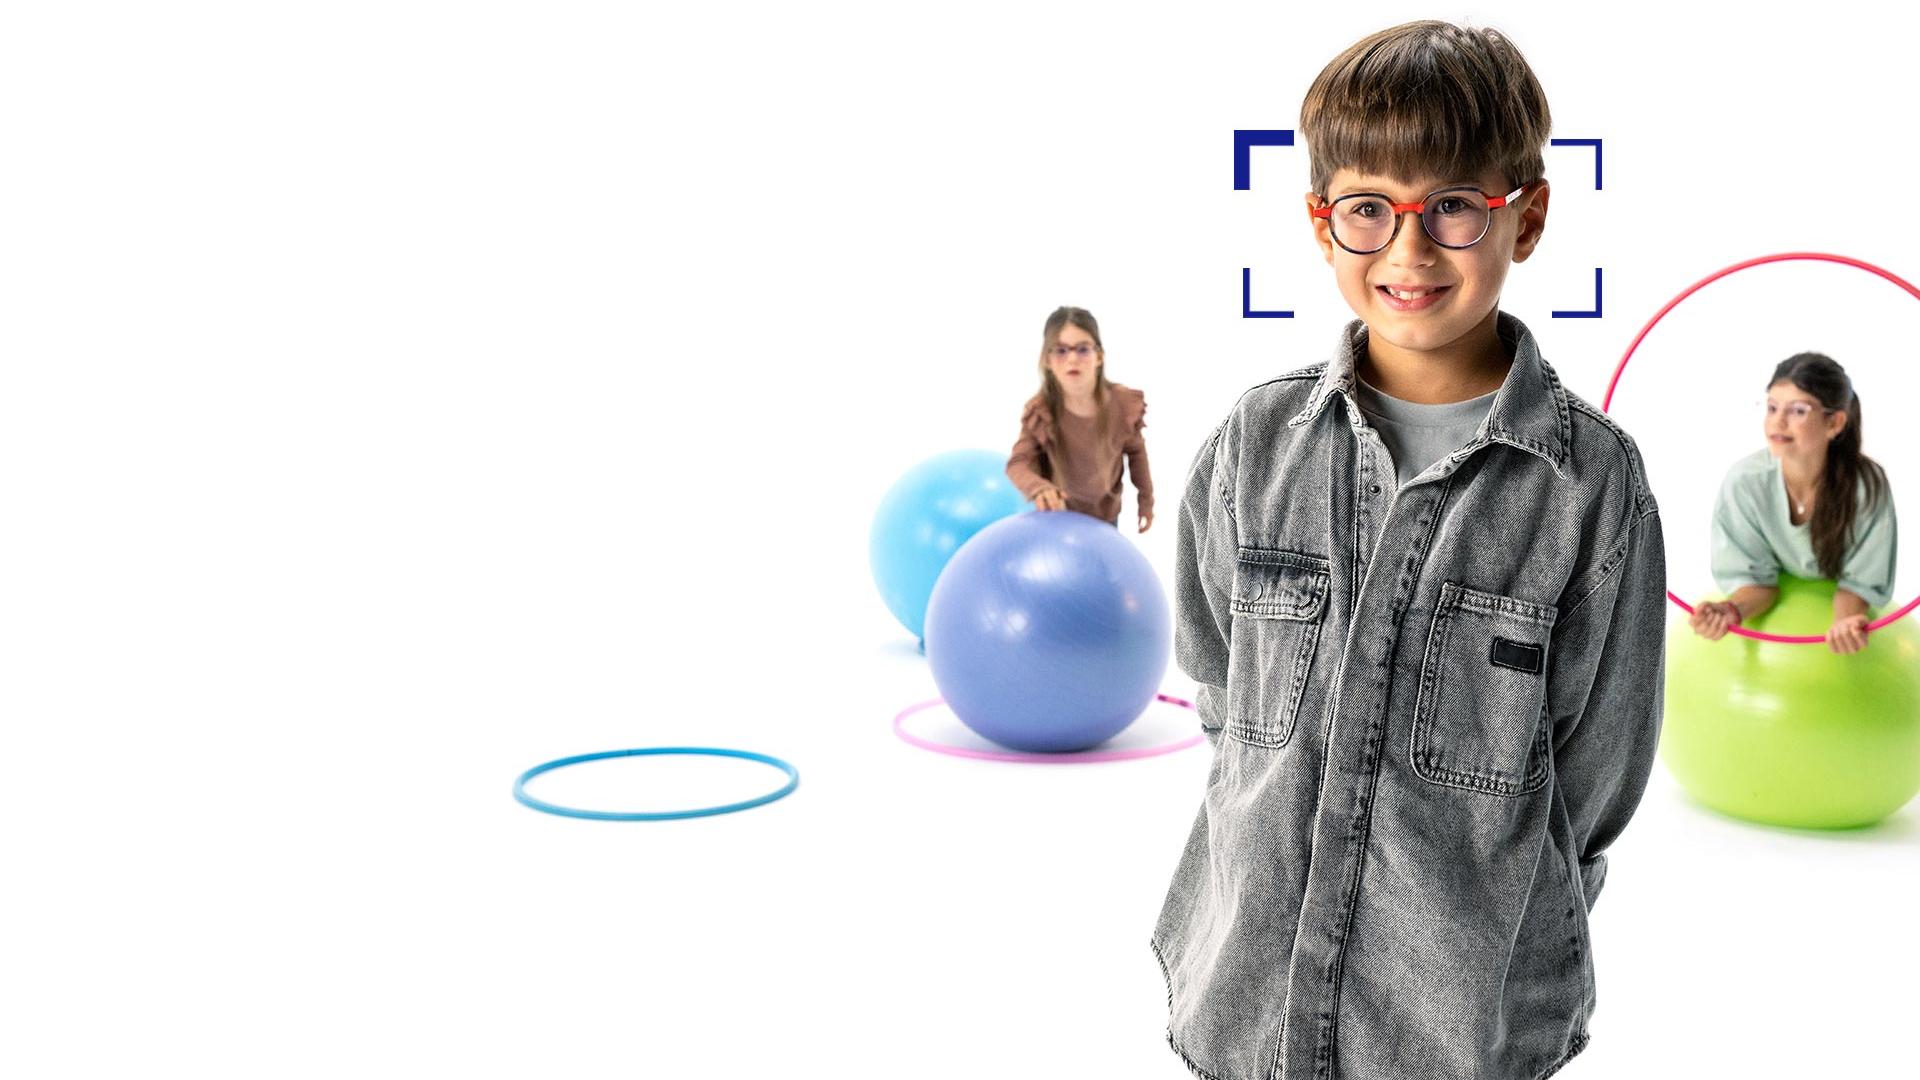 Dreng med brunt hår og runde briller med ZEISS MyoCare-brilleglas står i forgrunden og smiler til kameraet. I baggrunden ses to piger, der bærer briller med ZEISS MyoCare-brilleglas og leger med hoola-hoopringe og hoppebolde.